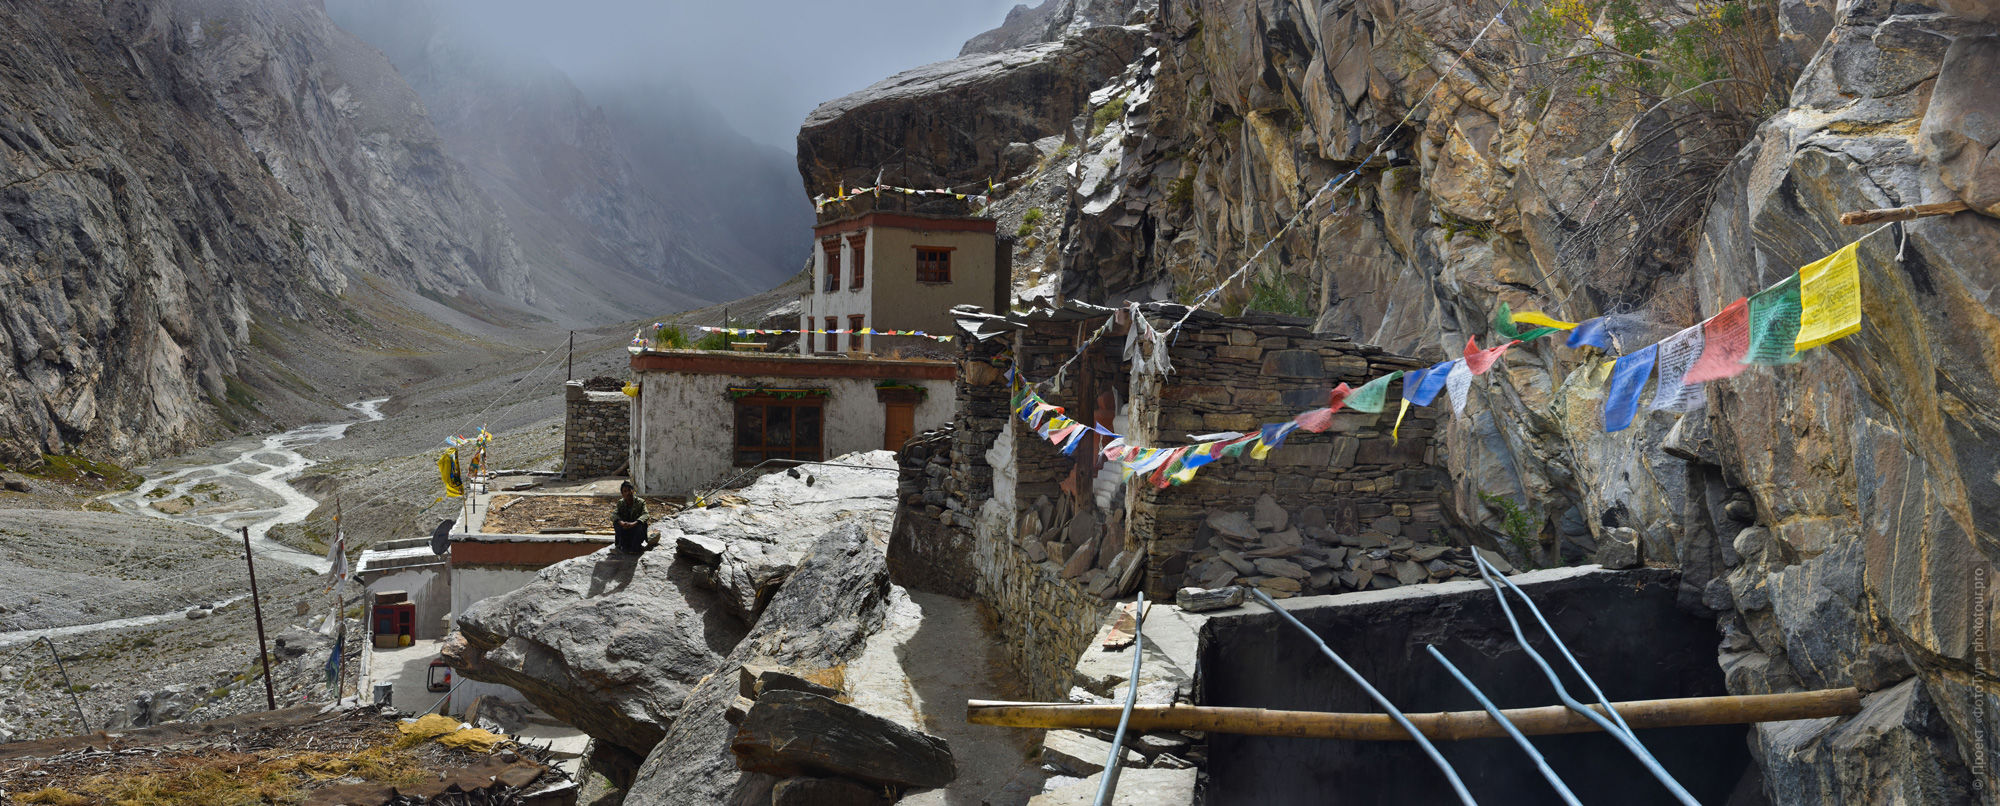 Буддийский монастырь Дзонгхул Гомпа, Занкар, Гималаи, Северная Индия.